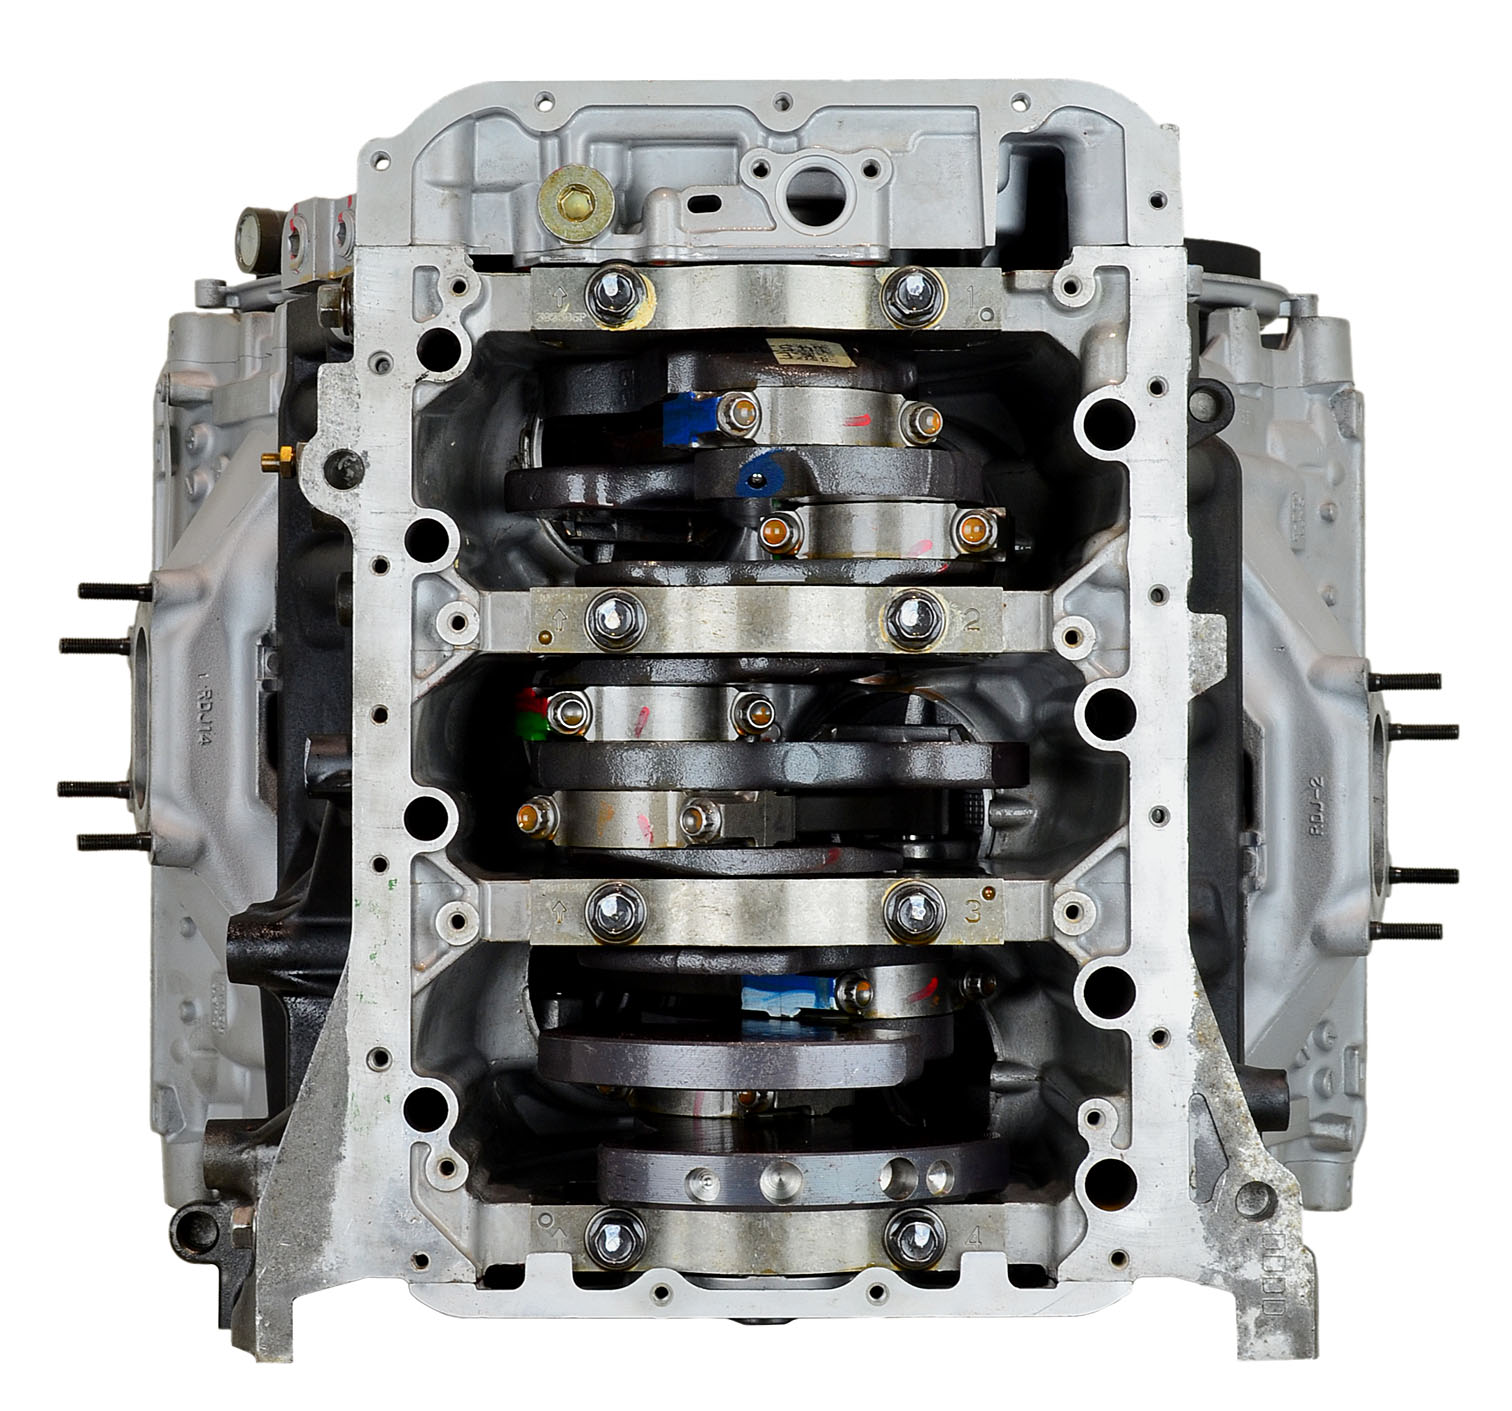 Honda J35A9 3.5L V6 Remanufactured Engine - 2006-2008